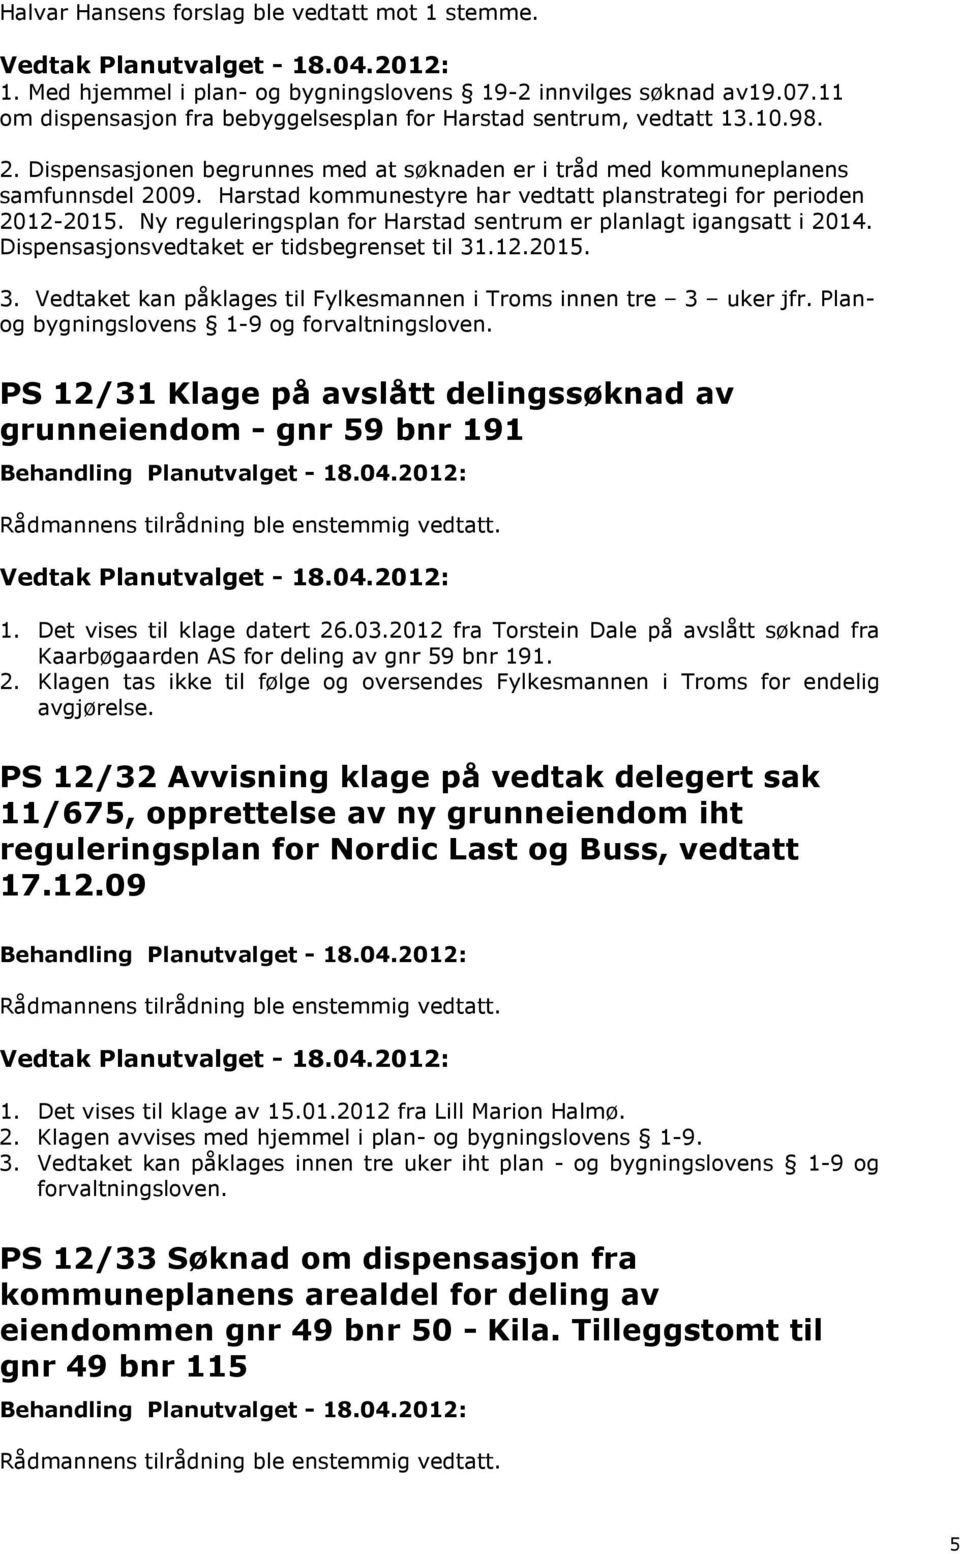 Ny reguleringsplan for Harstad sentrum er planlagt igangsatt i 2014. Dispensasjonsvedtaket er tidsbegrenset til 31.12.2015. 3. Vedtaket kan påklages til Fylkesmannen i Troms innen tre 3 uker jfr.